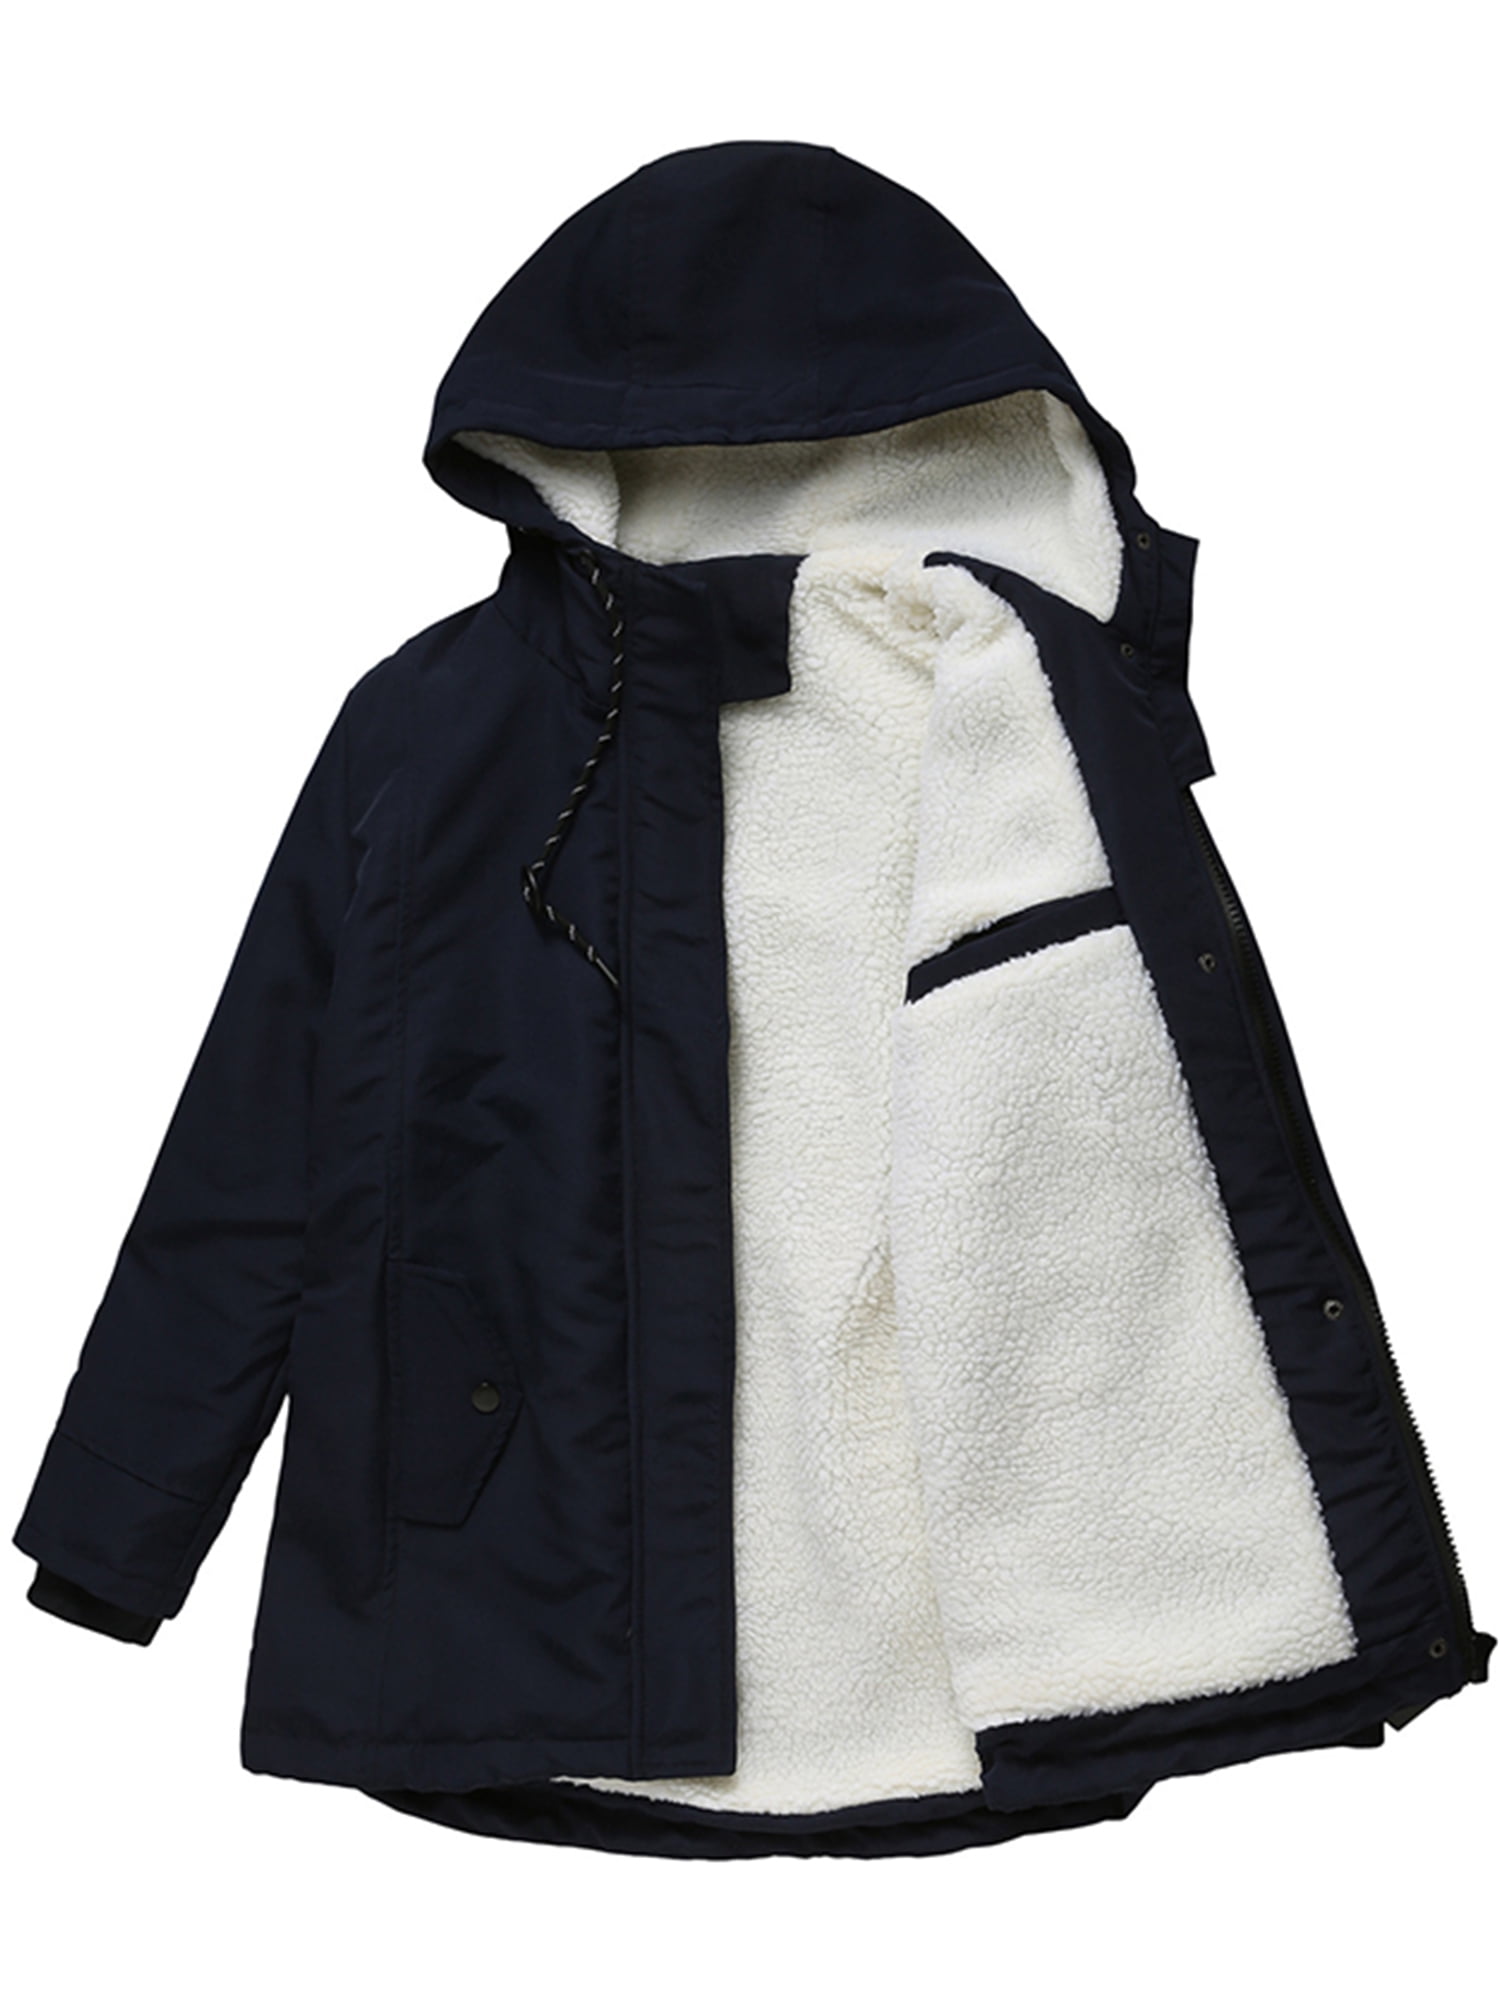 Mens Jacket Tokyo Laundry Parka Coat Hooded Sherp Lined Heavy Fish Tail Winter 